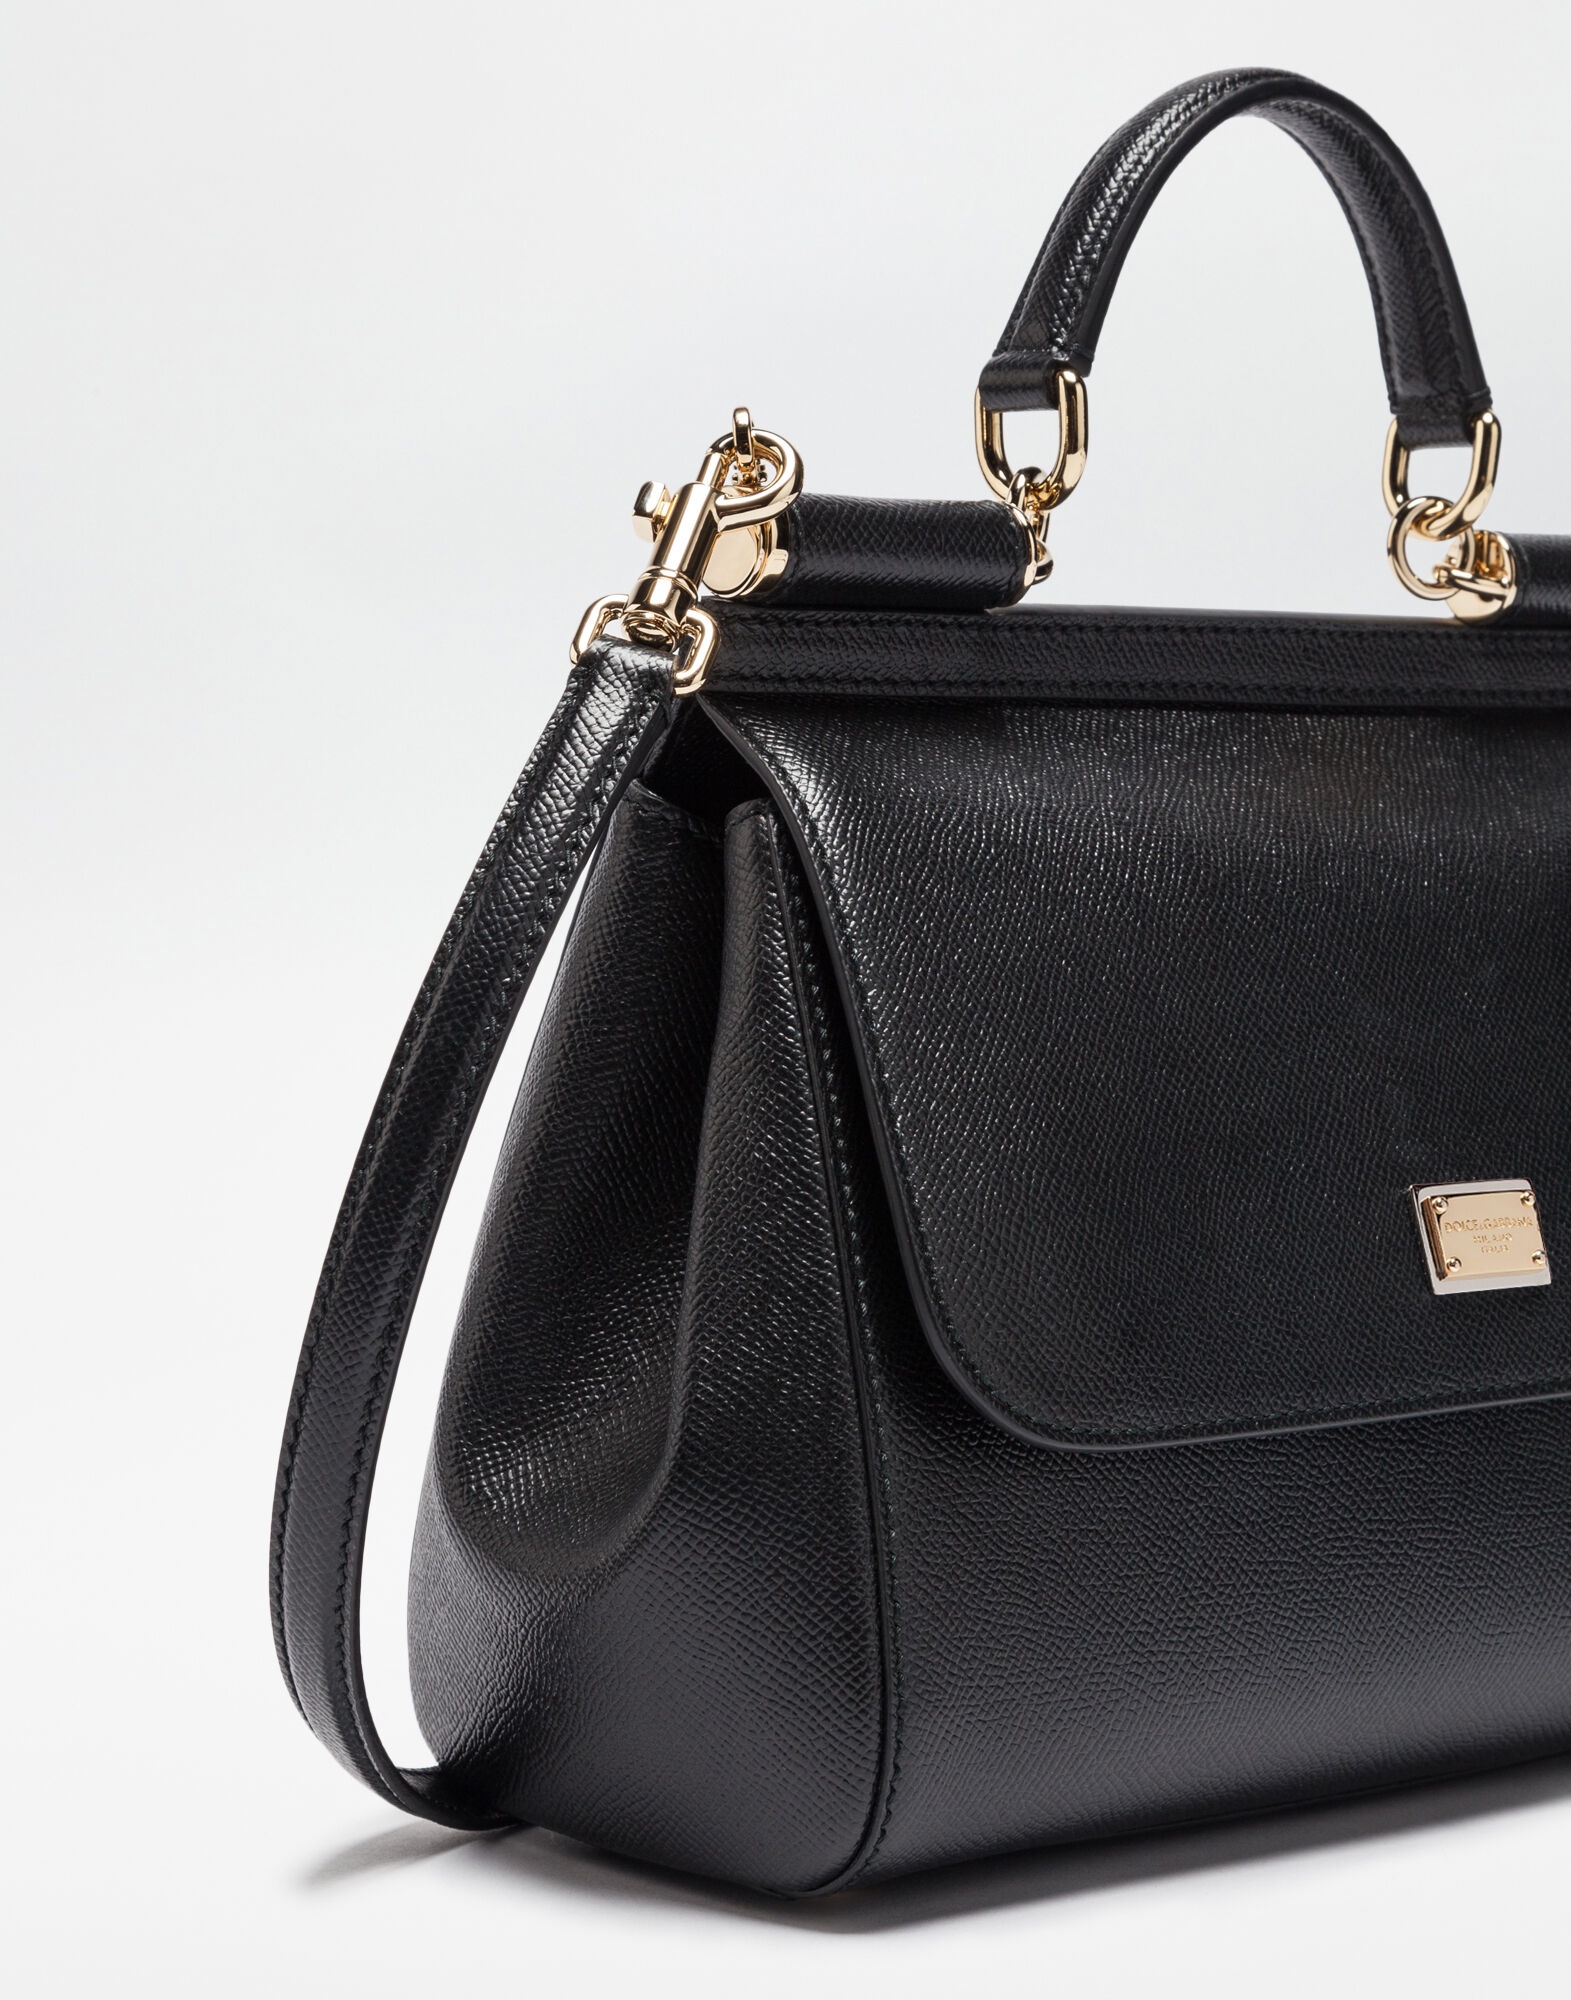 Medium Sicily handbag in dauphine leather - 2